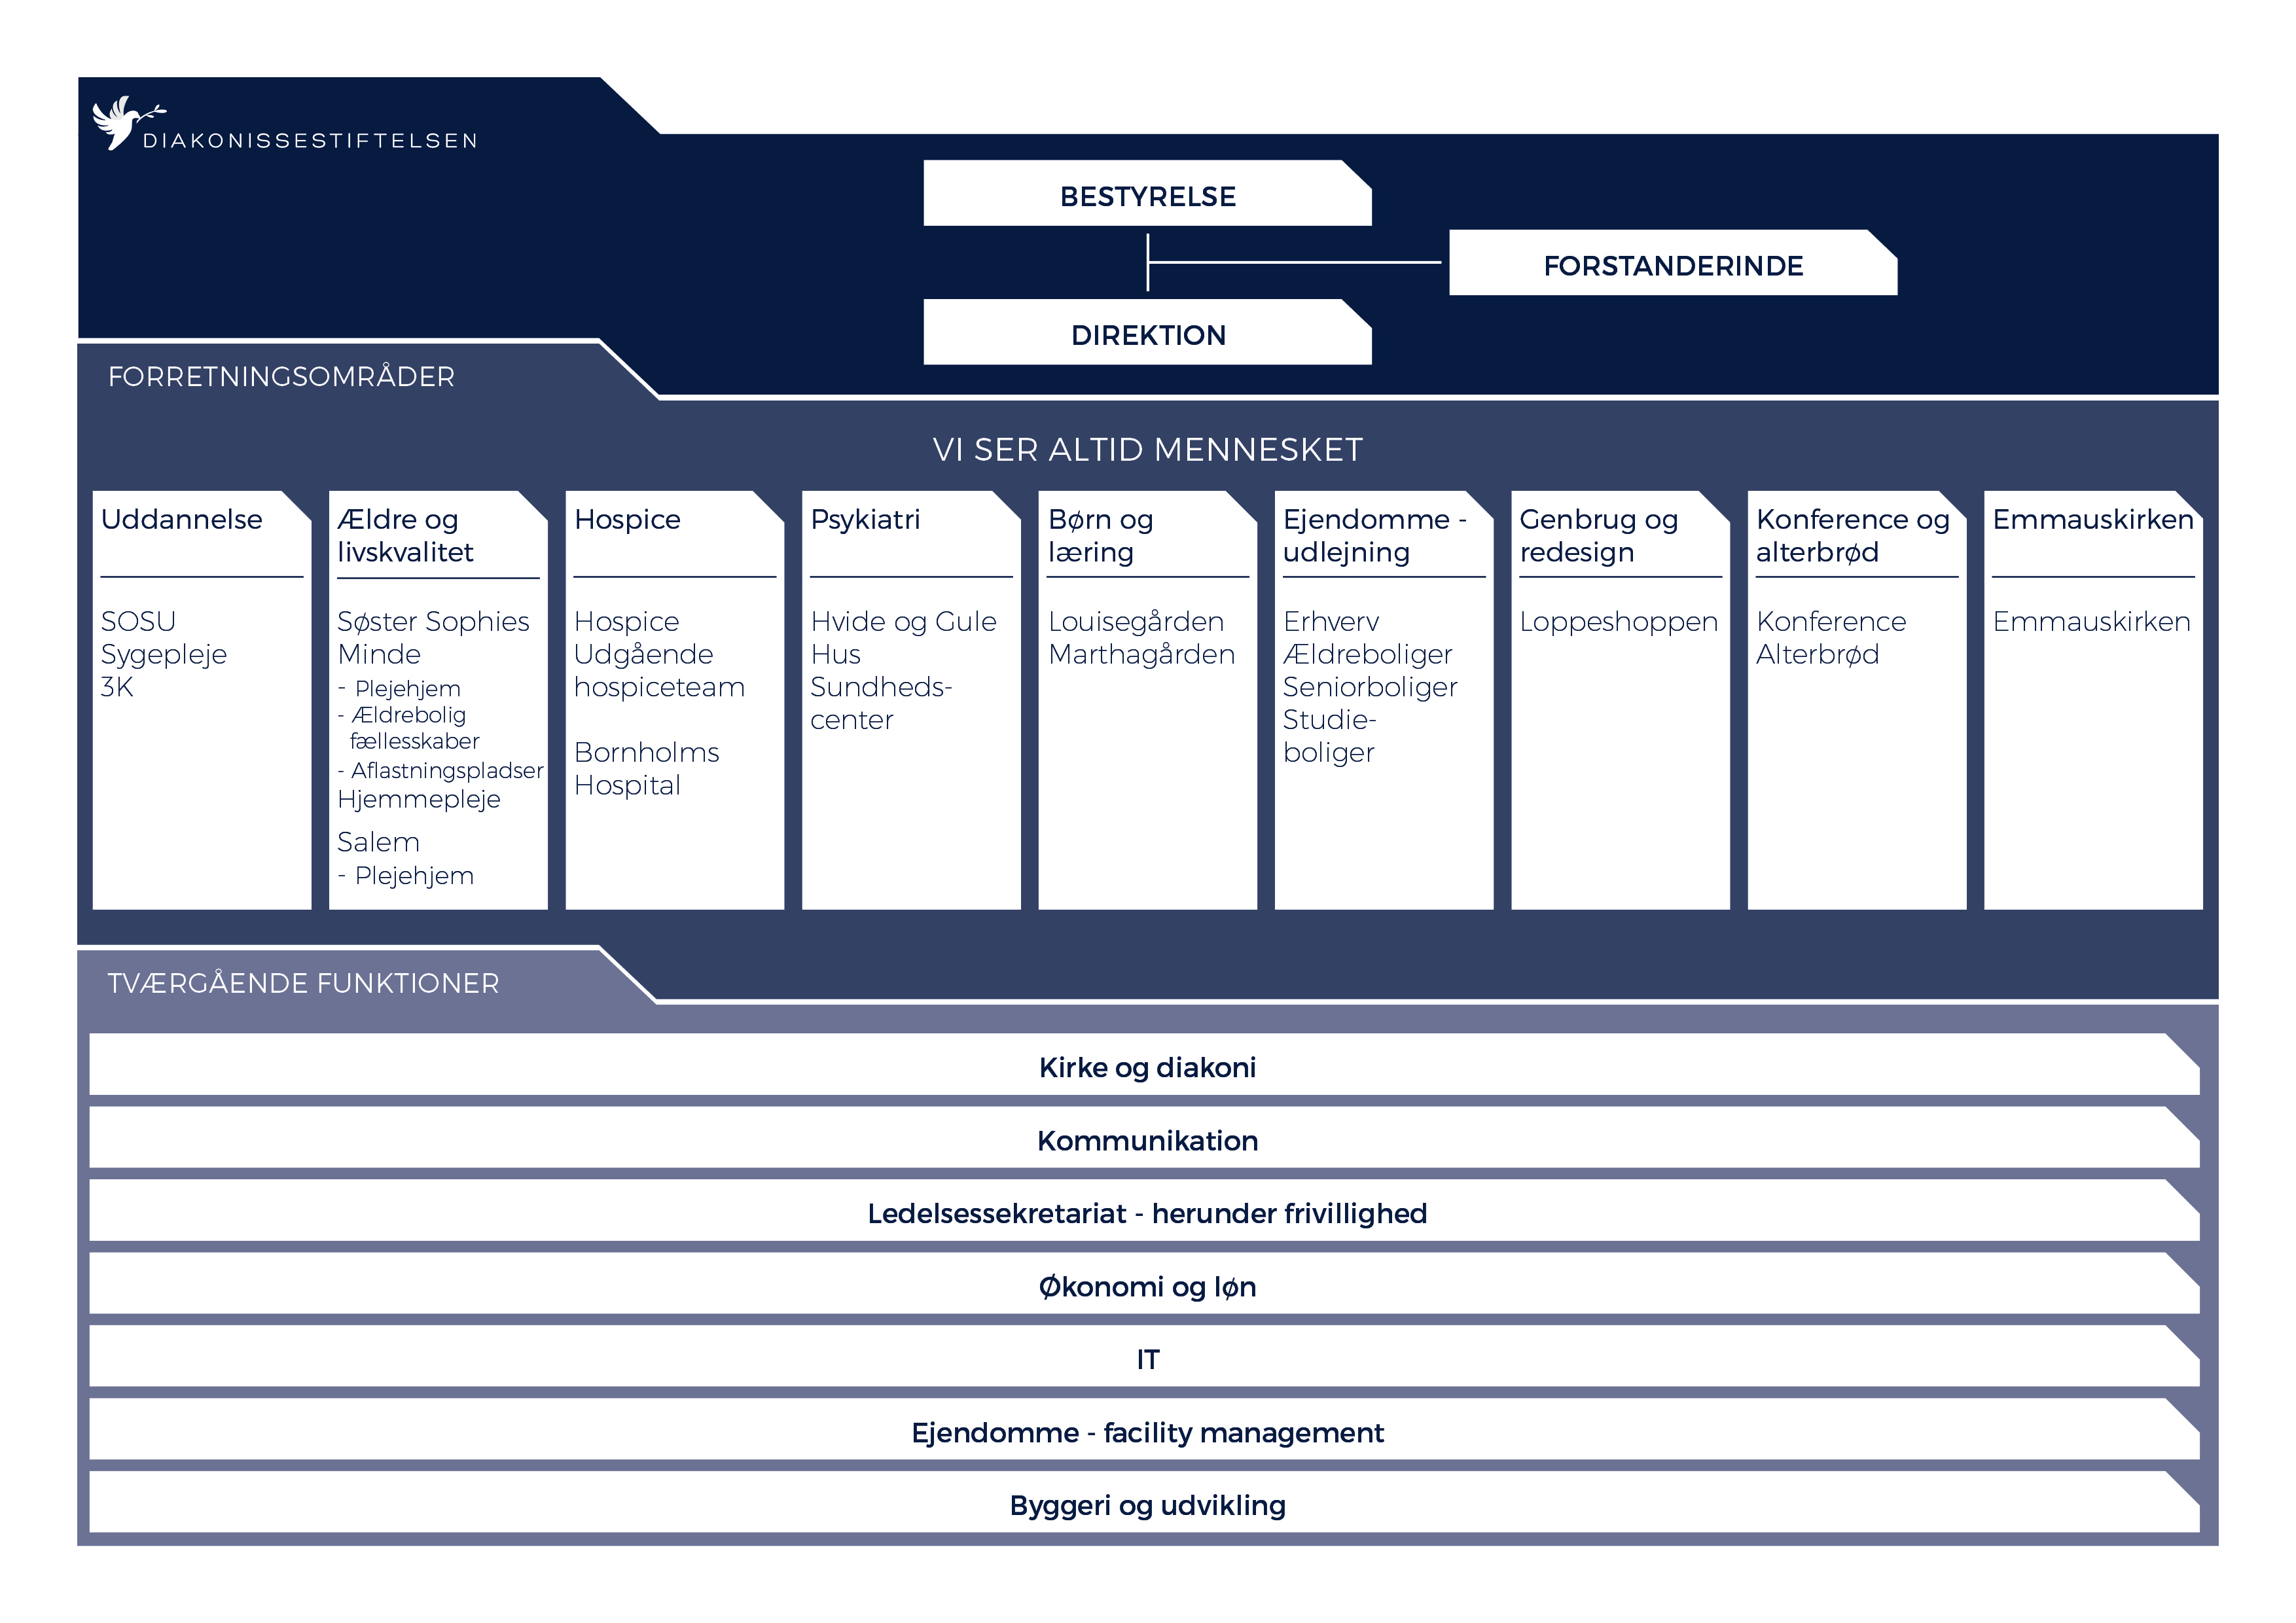 Billedet viser et organisationsdiagram over Diakonissestiftelsen.